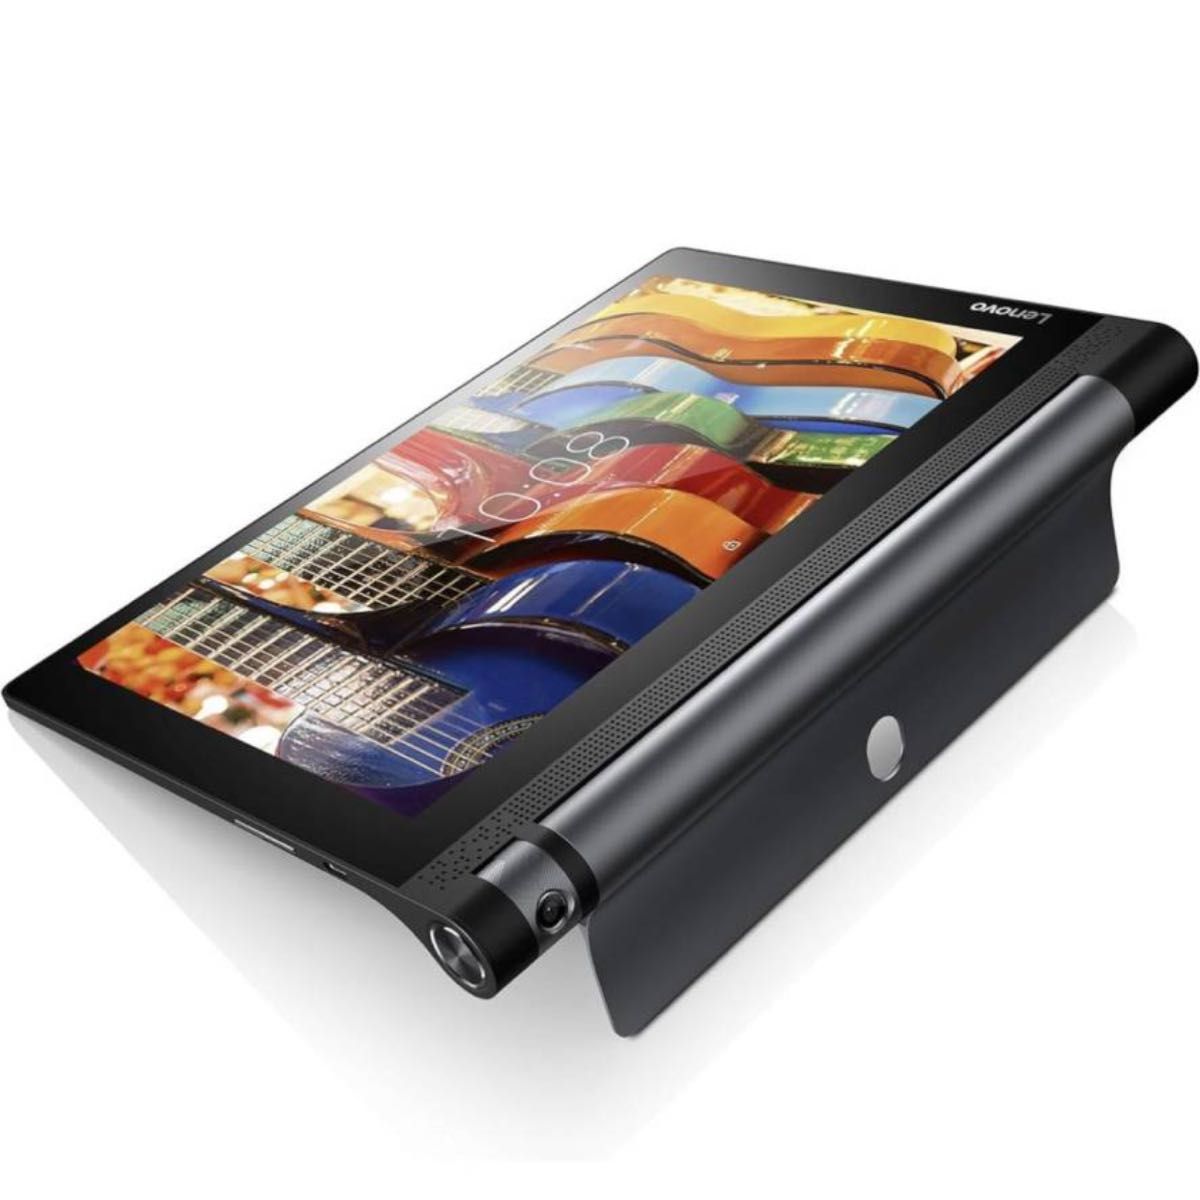 レノボ YOGA YT3-X50F Android 6.0.1 タブレットメモリ 16GB・メモリ 2GB 美品 2台セット